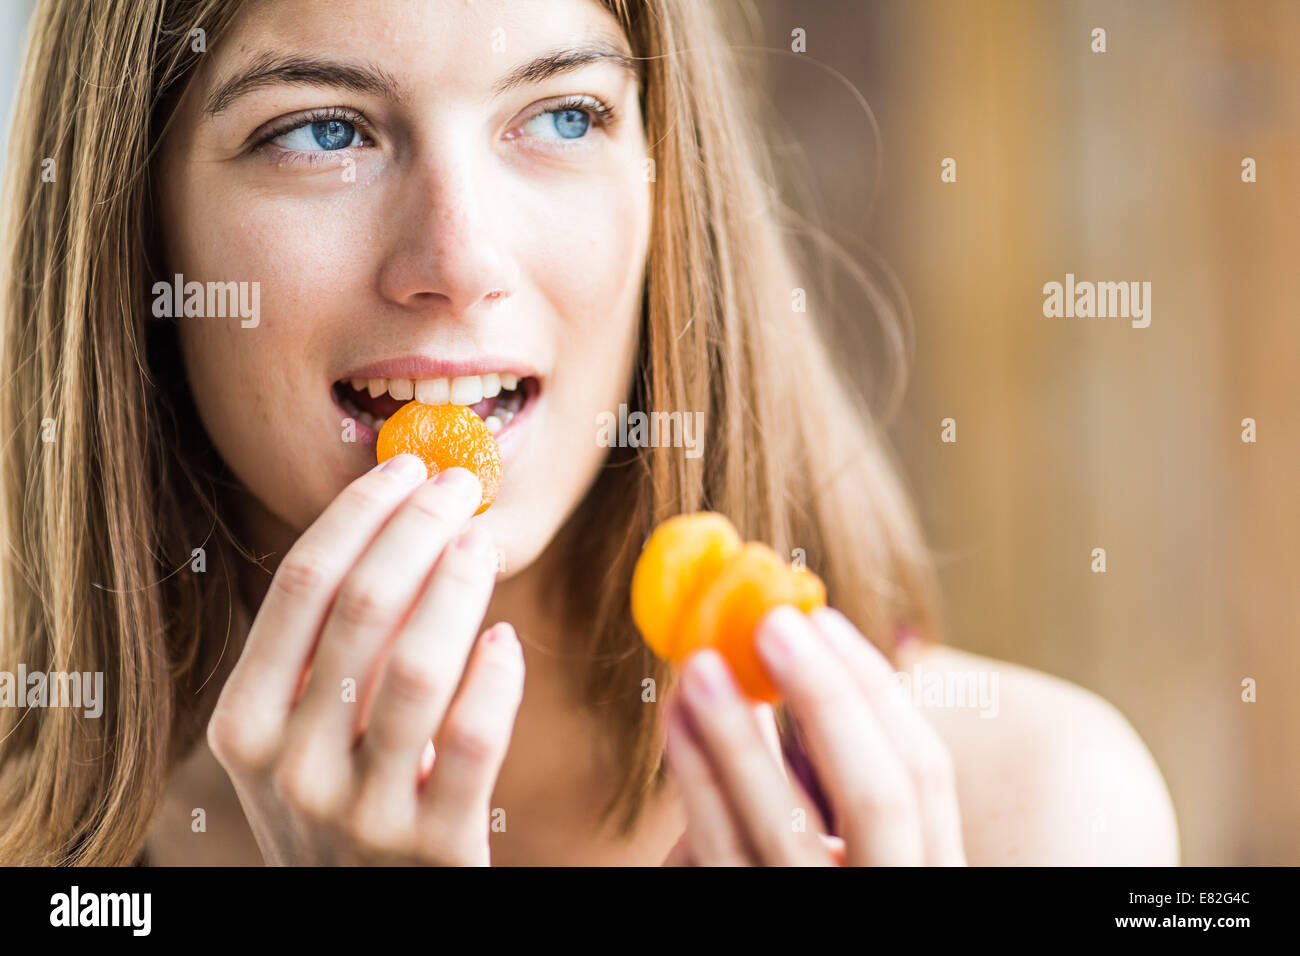 Mangiare donna albicocca secca. Foto Stock